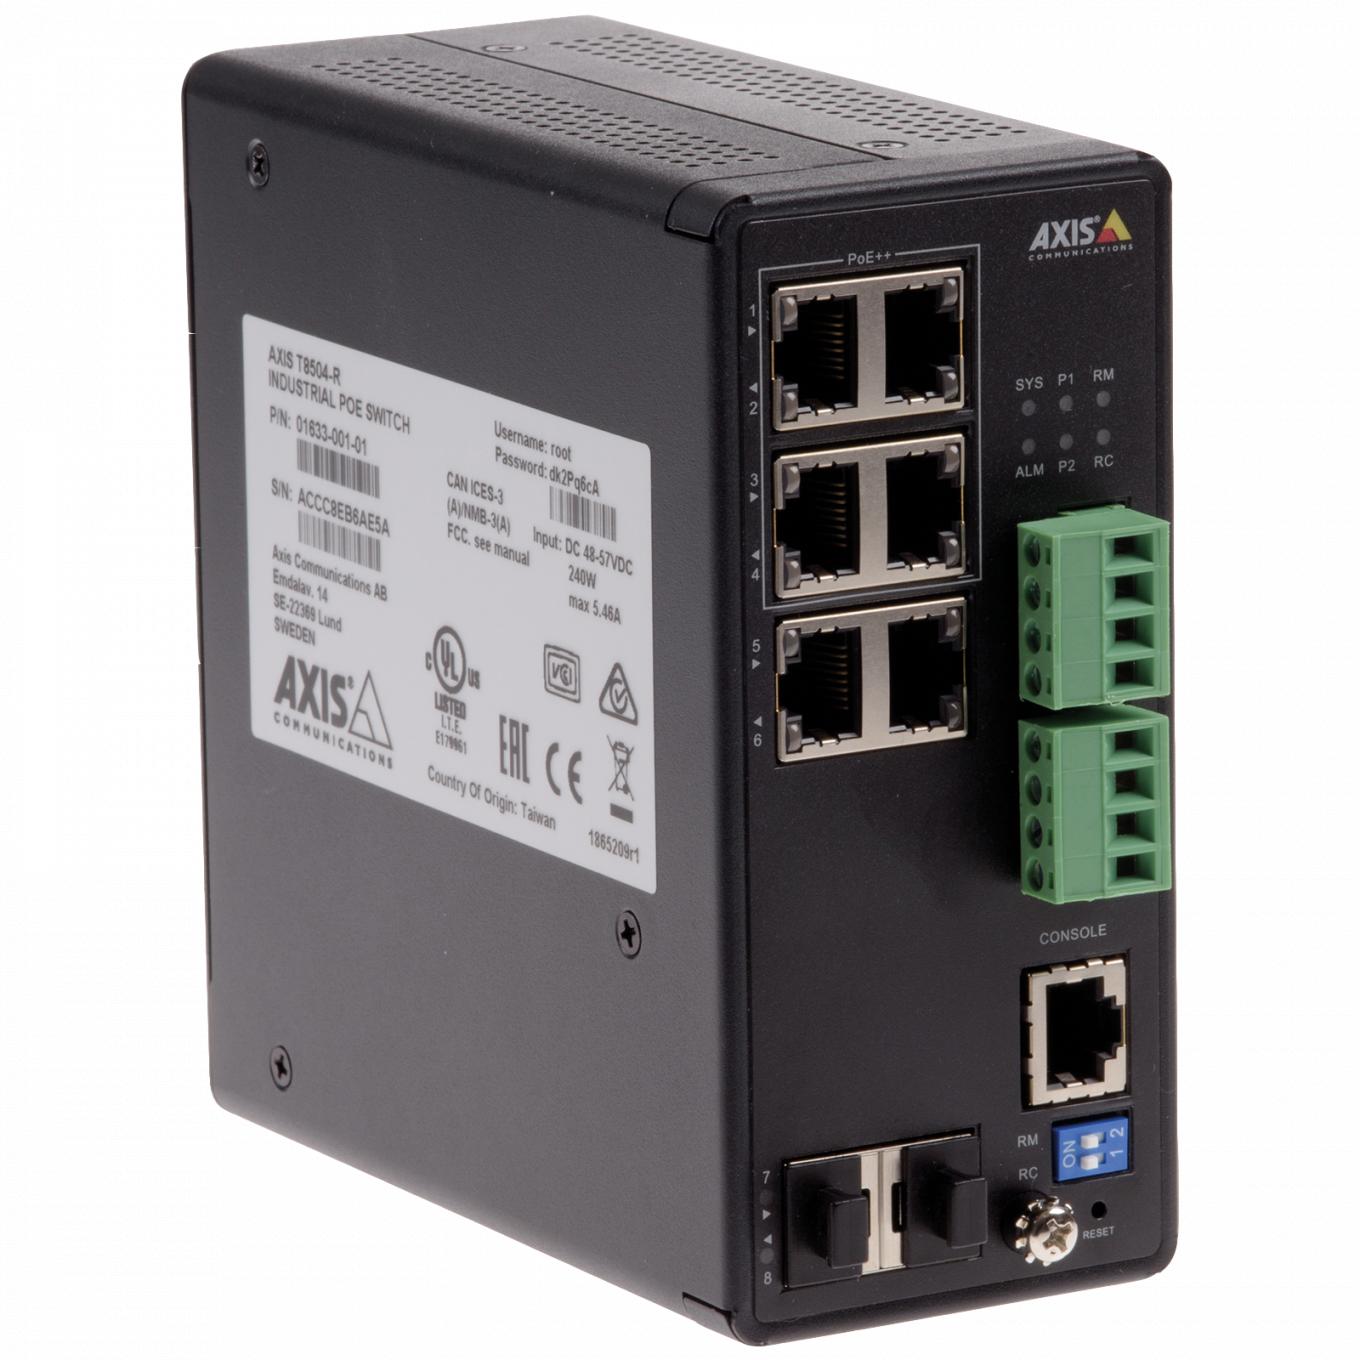 激安単価で <br>01191-005 AXIS T8508 POE ネットワーク スイッチ<br>